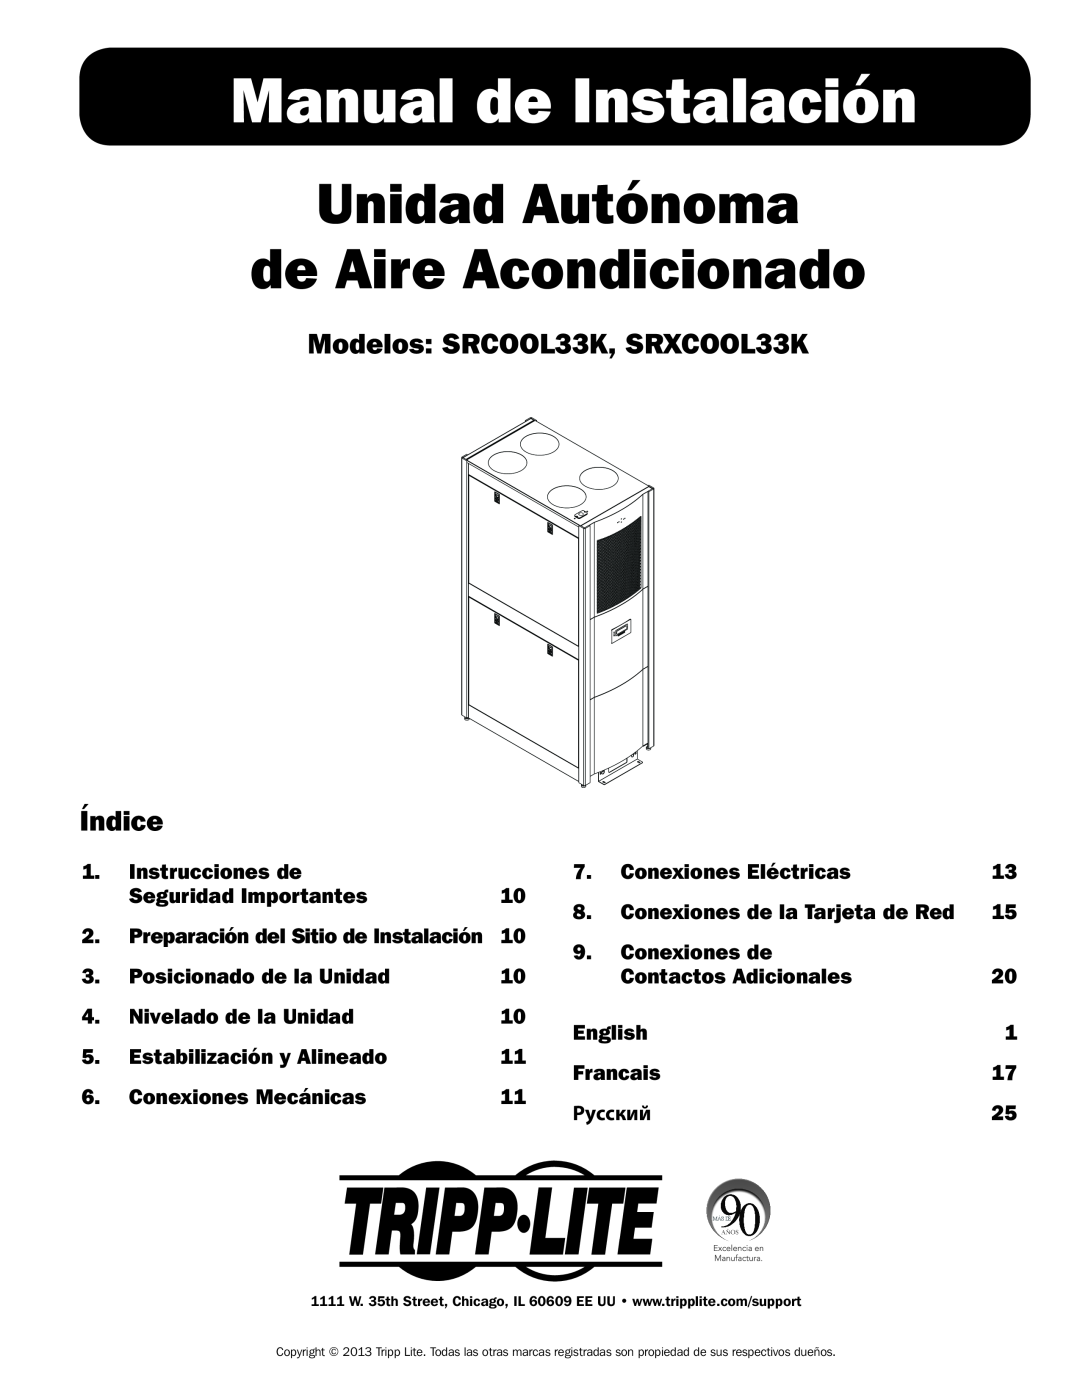 Tripp Lite Manual de Instalación, Unidad Autónoma de Aire Acondicionado, Modelos SRCOOL33K, SRXCOOL33K Índice, English 